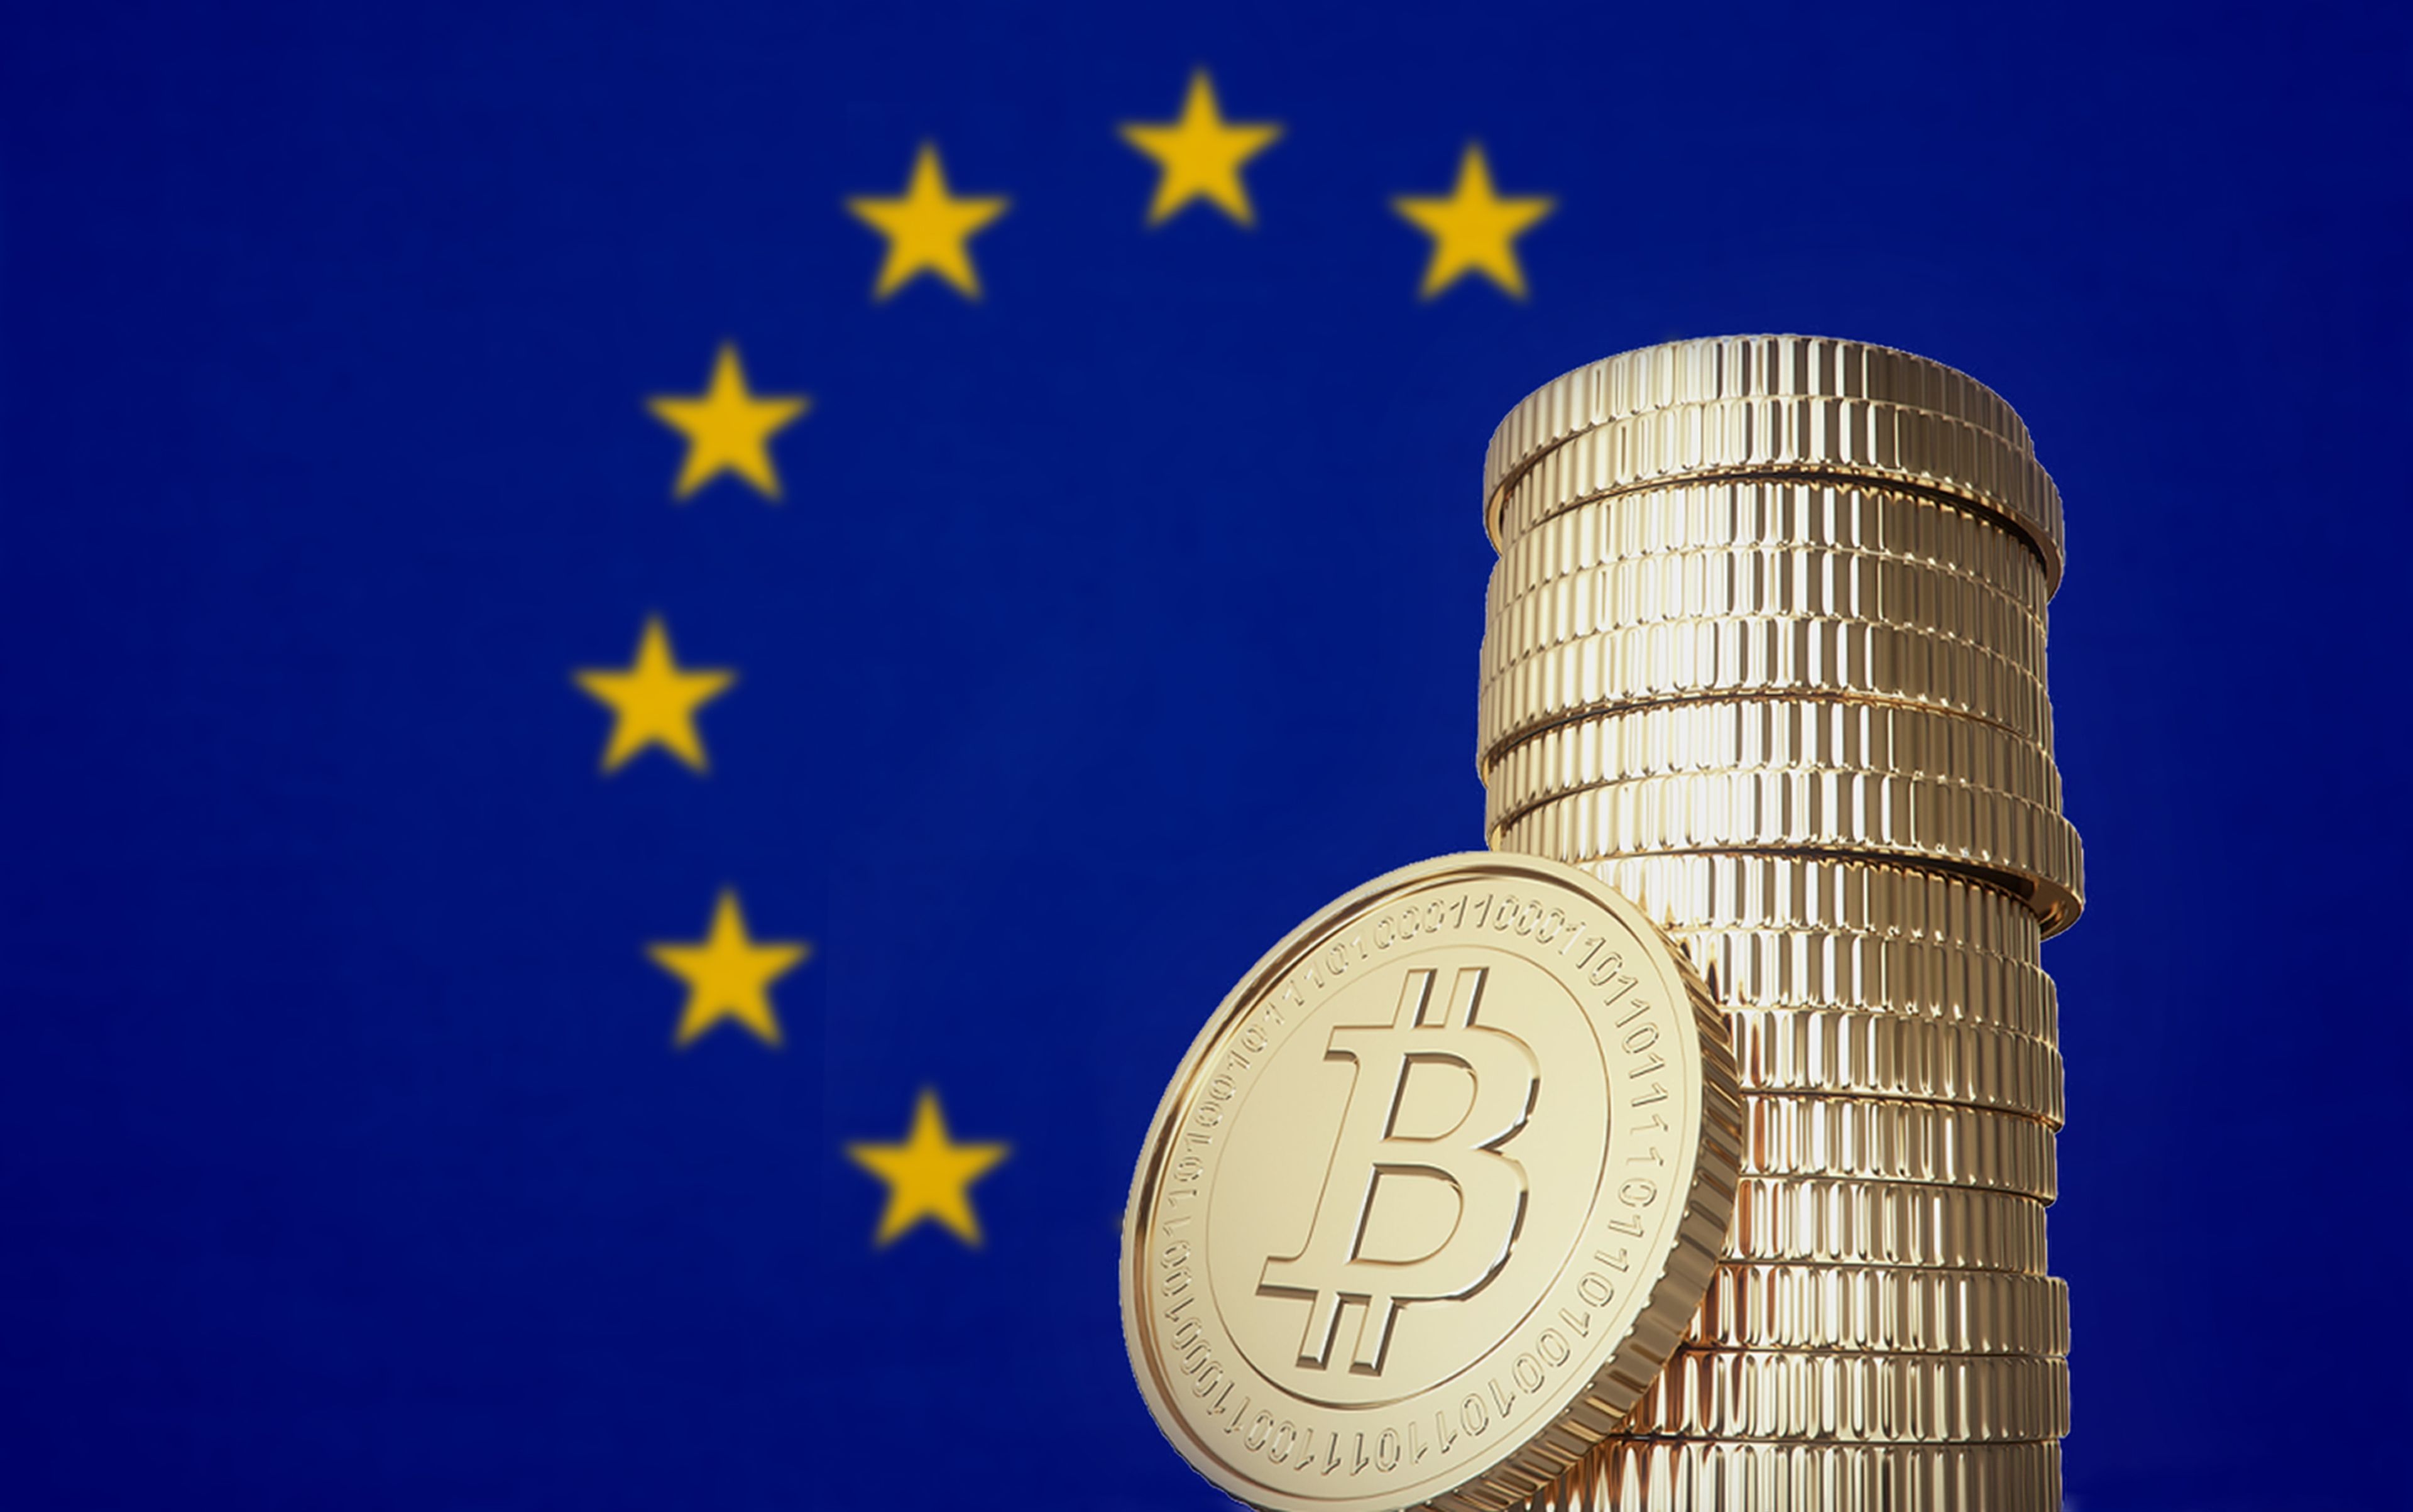 Adiós a la vida pirata de las criptomonedas: la UE va a prohibir los monederos y transacciones anónimas, y pagos mayores de 10.000 euros